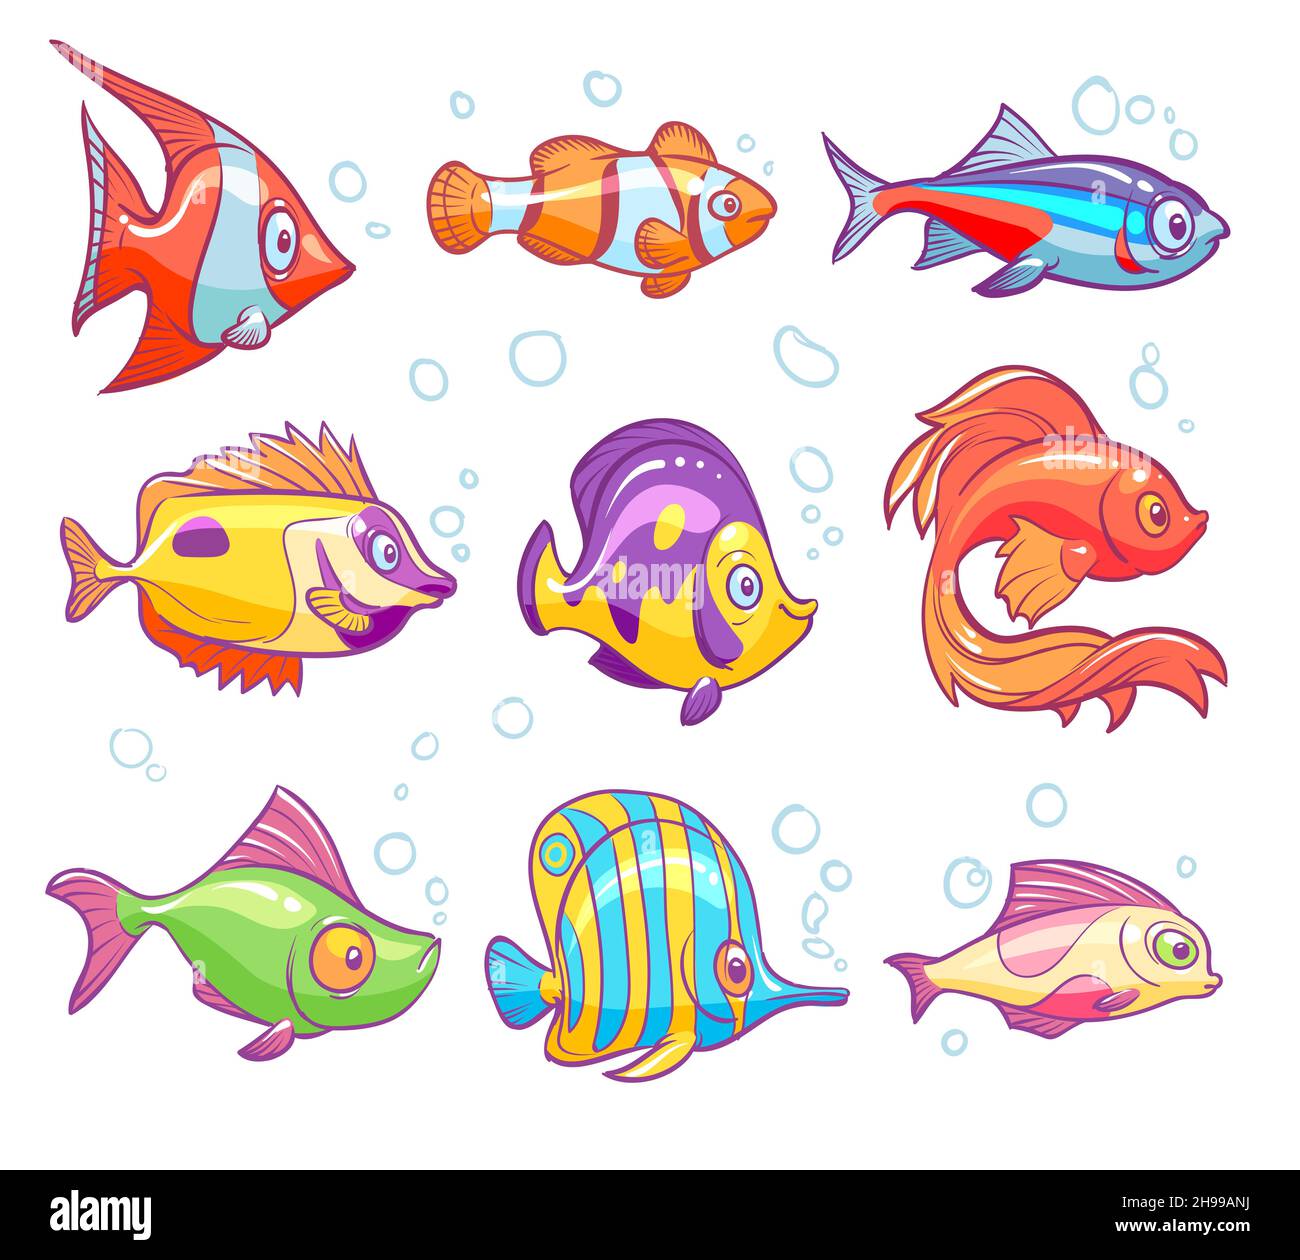 Poissons de dessin animé.Aquarium mer poissons tropicaux drôle animaux sous-marins.Ensemble isolé vectoriel de poissons rouges pour enfants Illustration de Vecteur